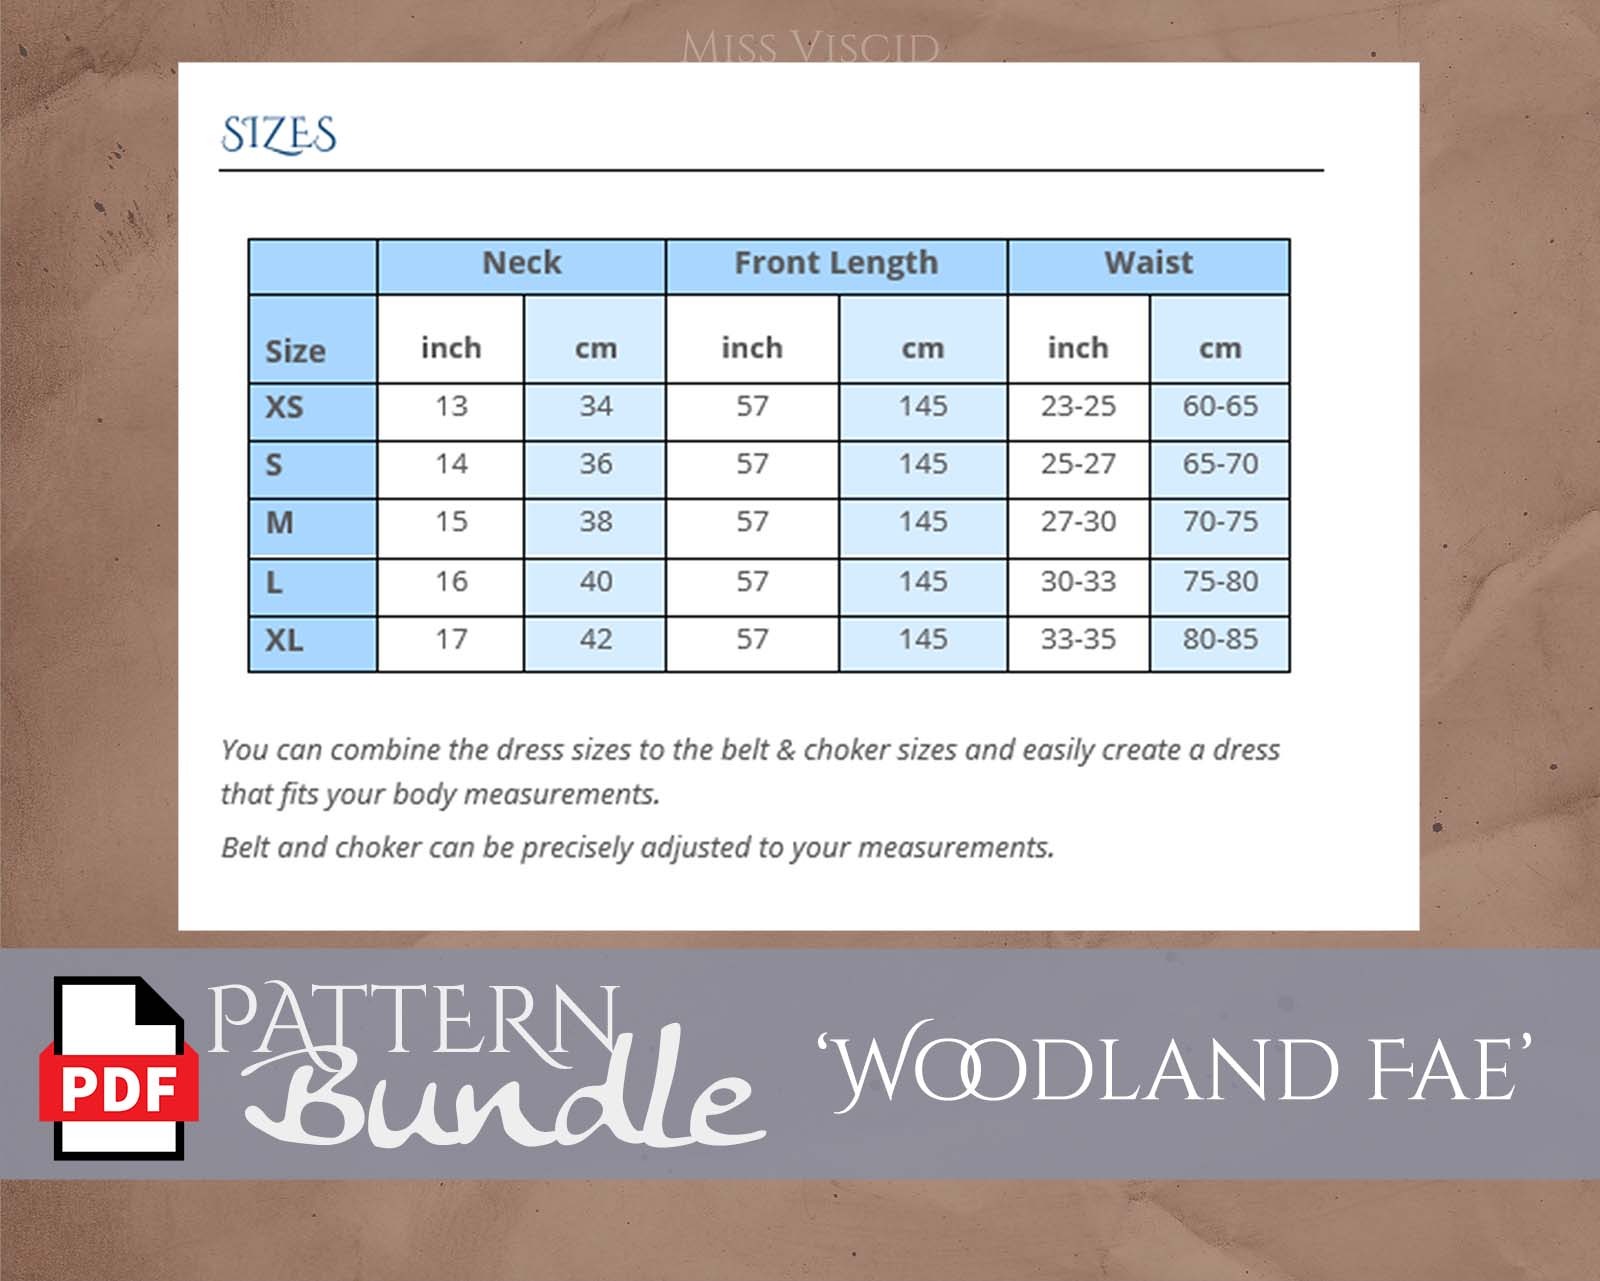 WOODLAND FAE - Schnittmuster Bundle für DIN A4 Drucker und DIN A0 Plotter 3